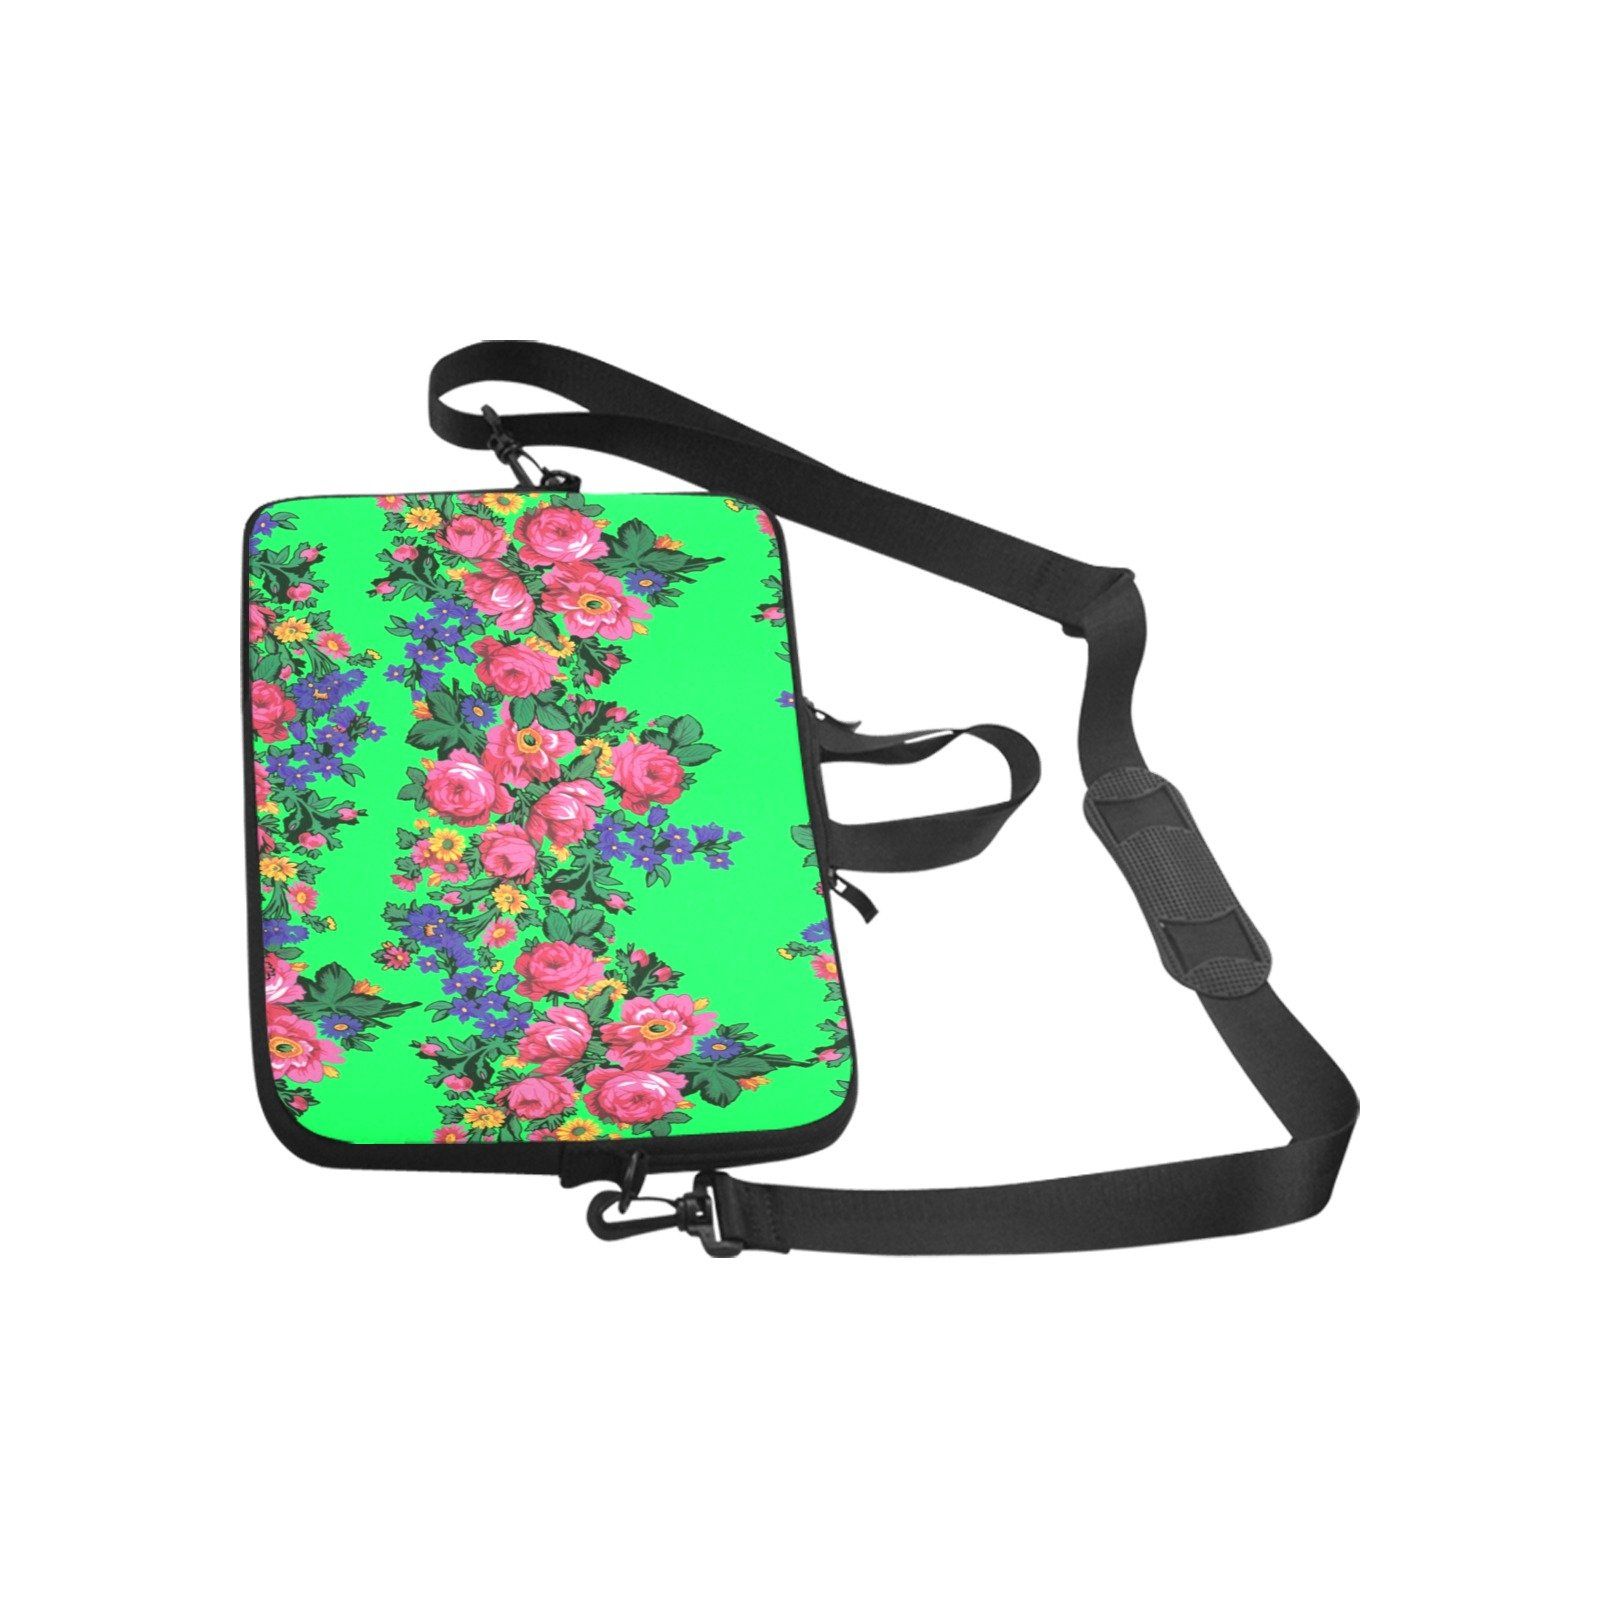 Kokum's Revenge Green Laptop Handbags 13" Laptop Handbags 13" e-joyer 